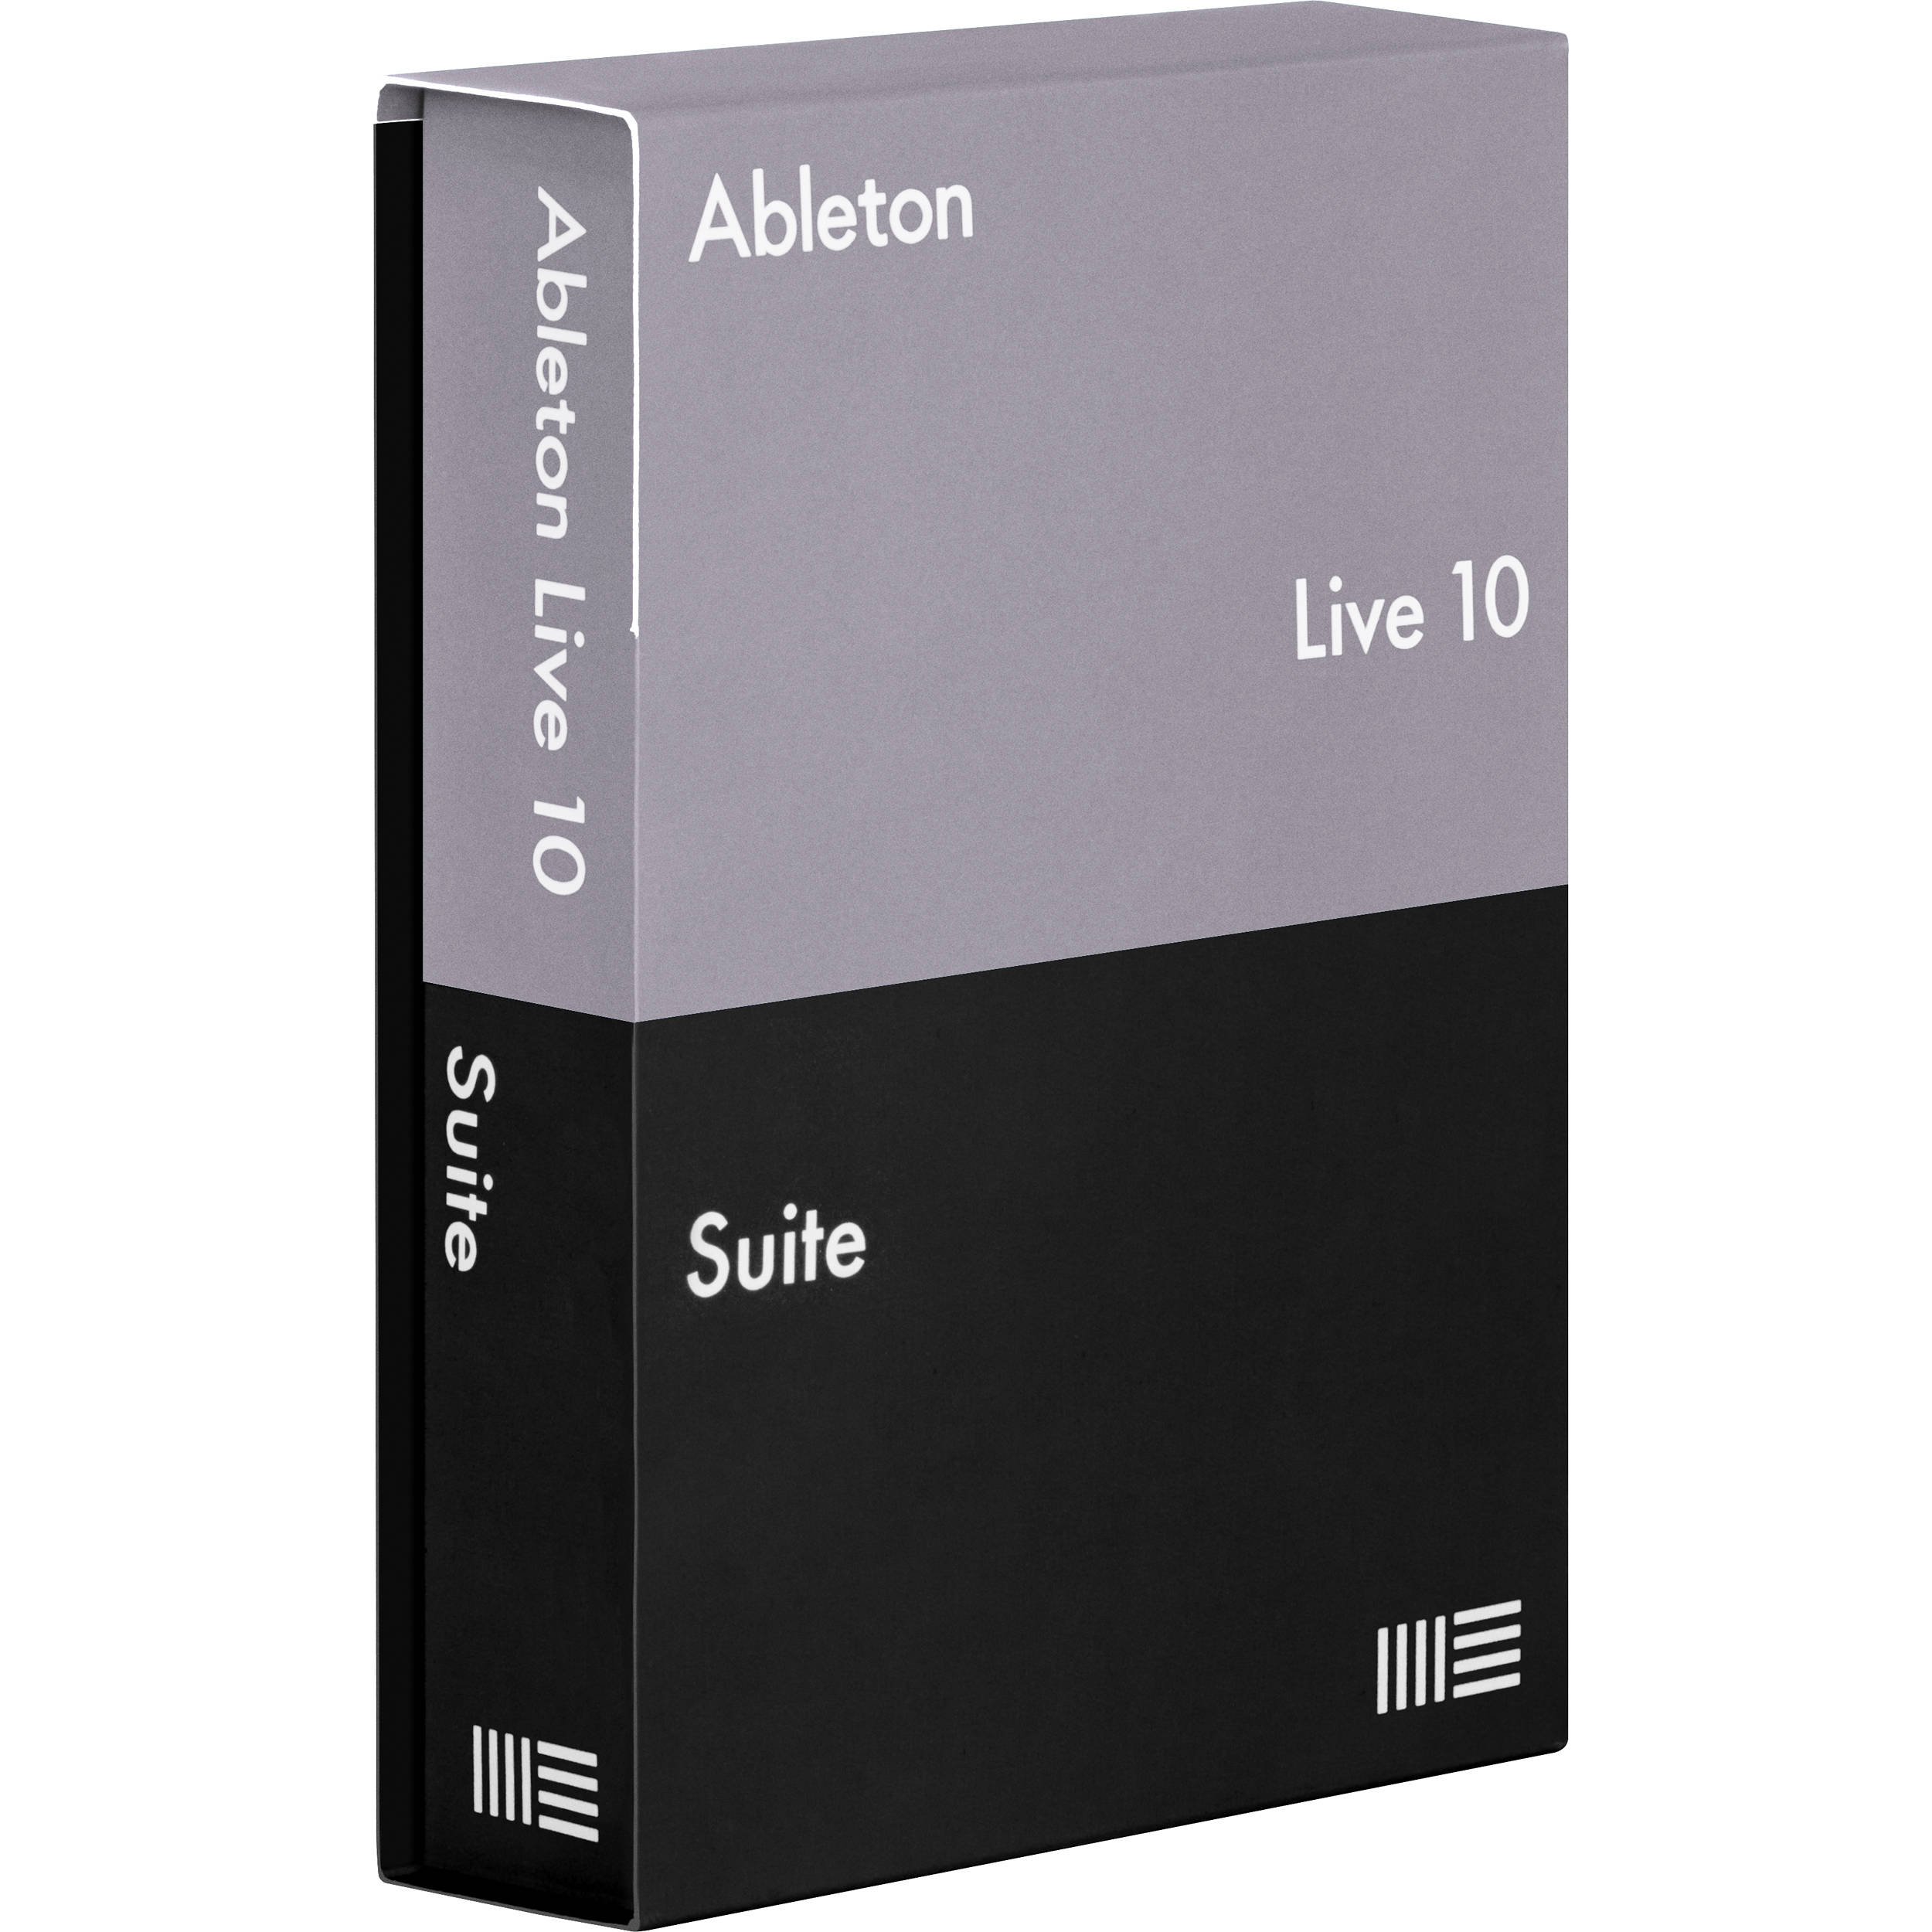 Ableton live 10 suite torrent